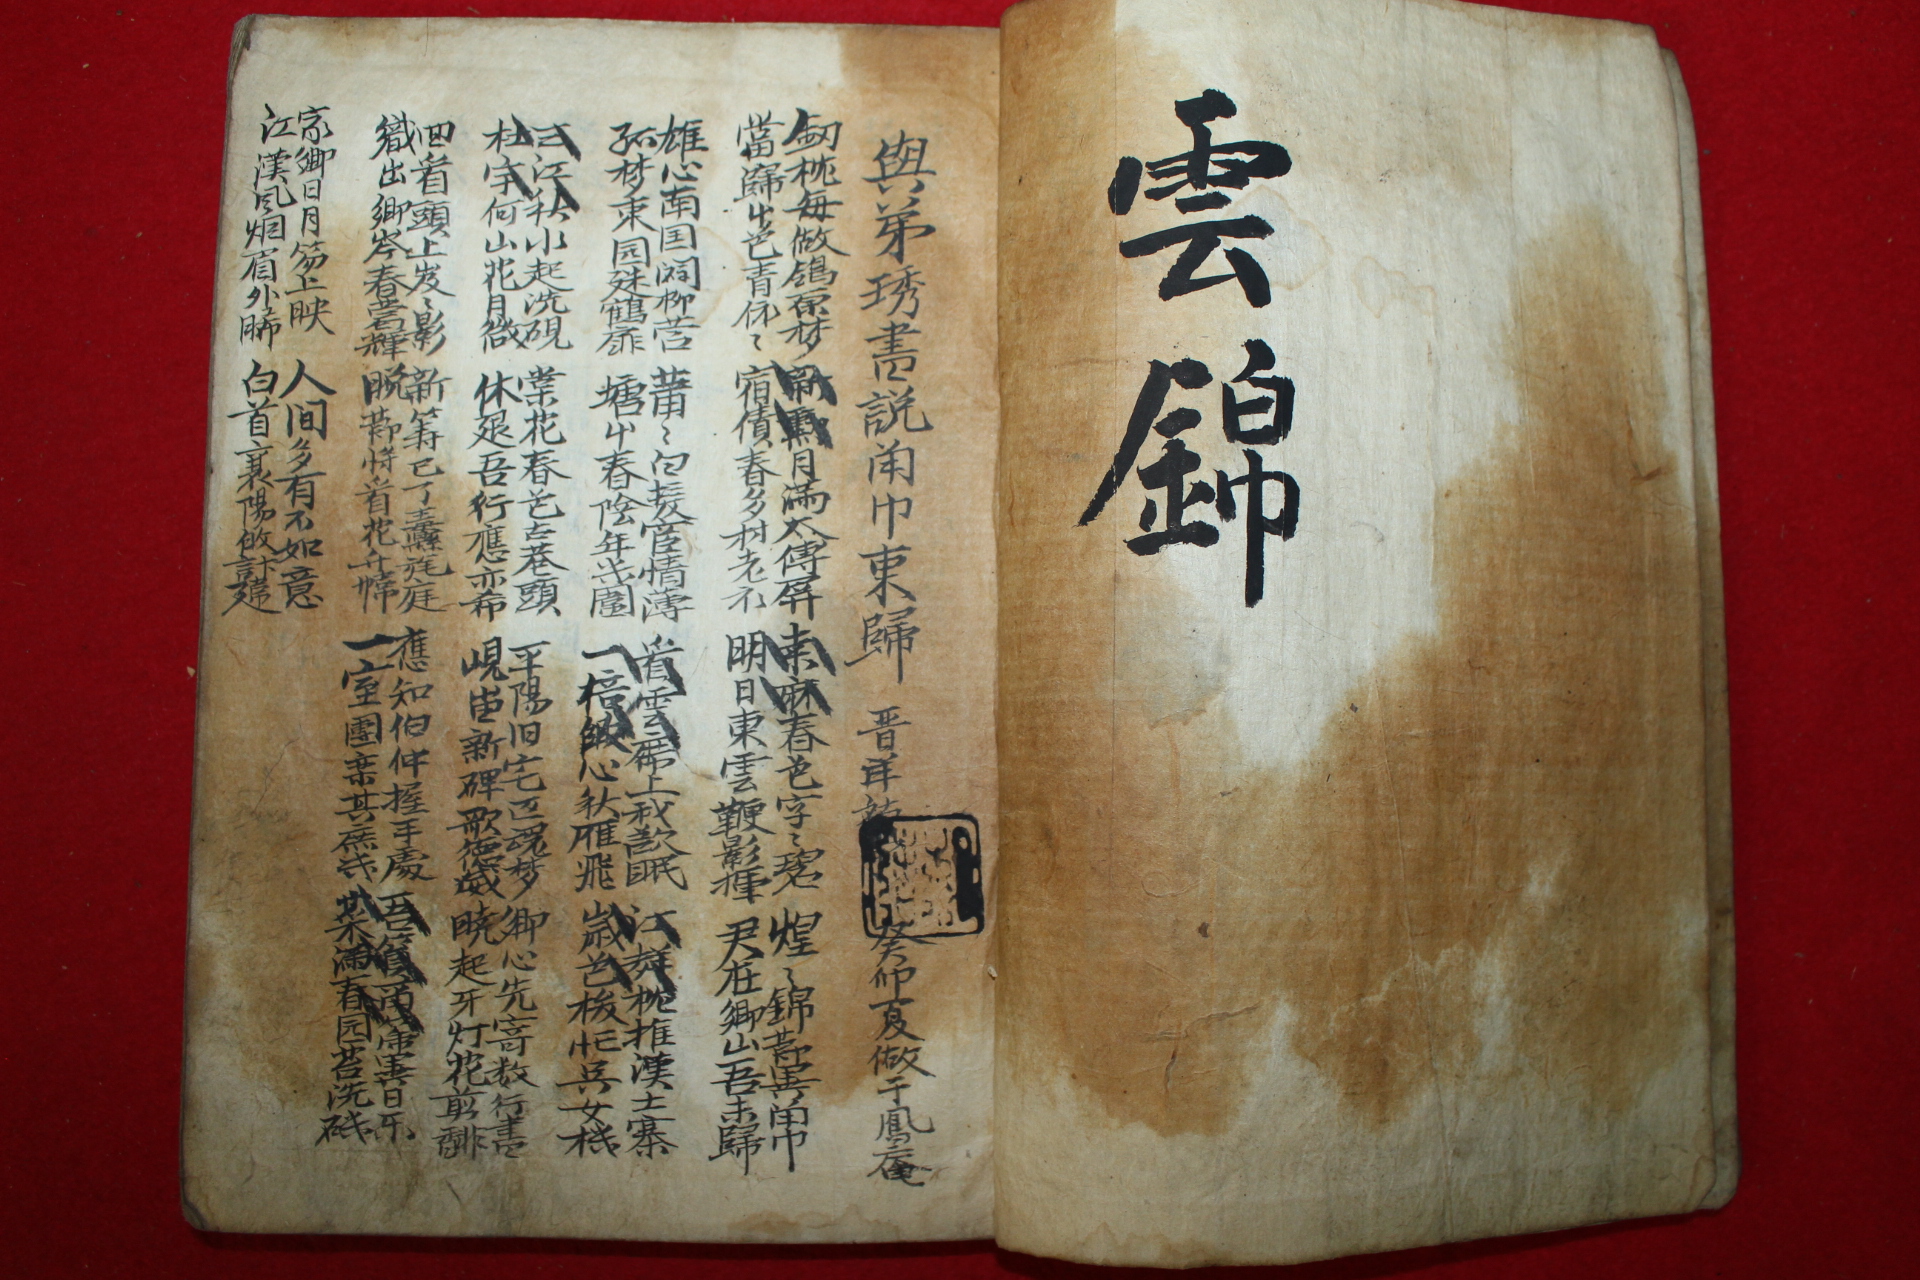 조선시대 잘정서된 고필사본 시집 운금(雲錦)